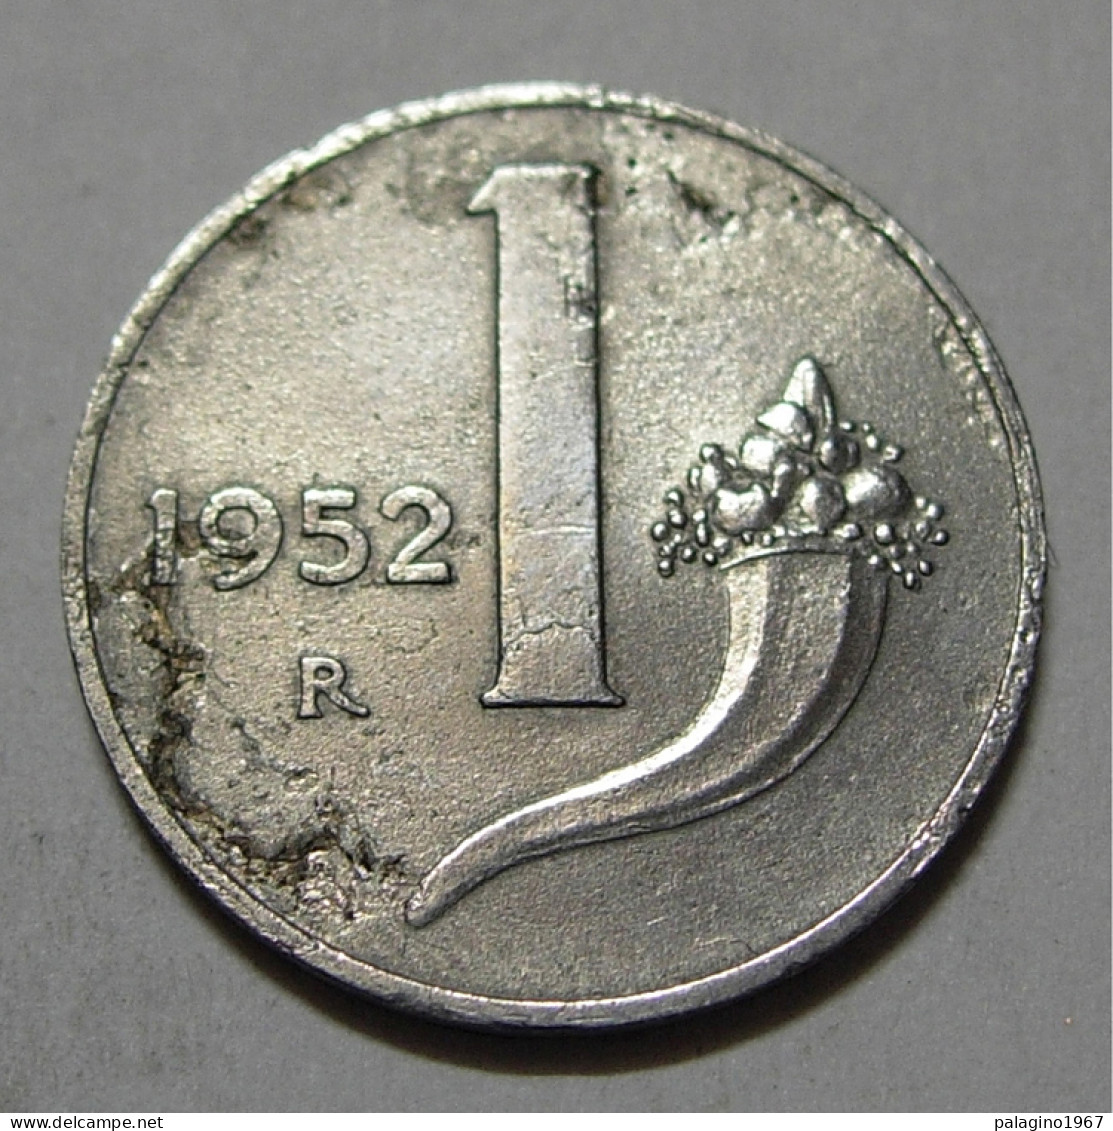 REPUBBLICA ITALIANA 1 Lira Cornucopia 1952 MB  - 1 Lira